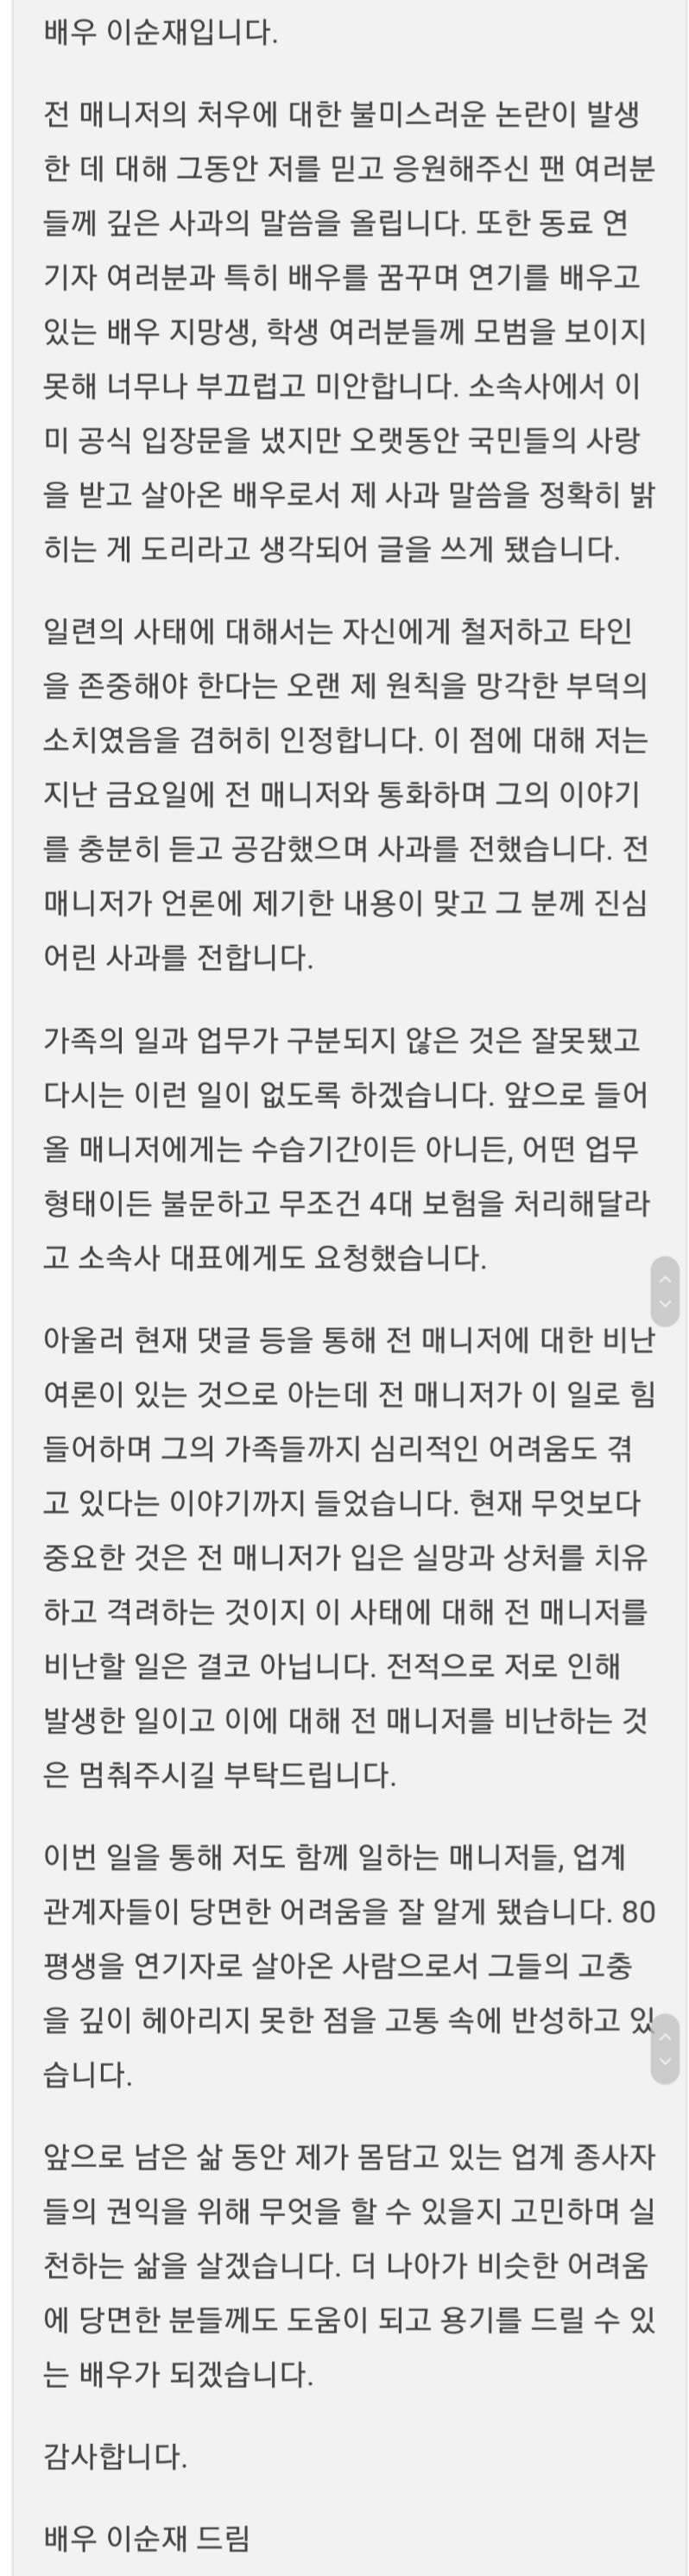 배우 이순재 매니저에 대한 갑질 논란에 대한 사과문